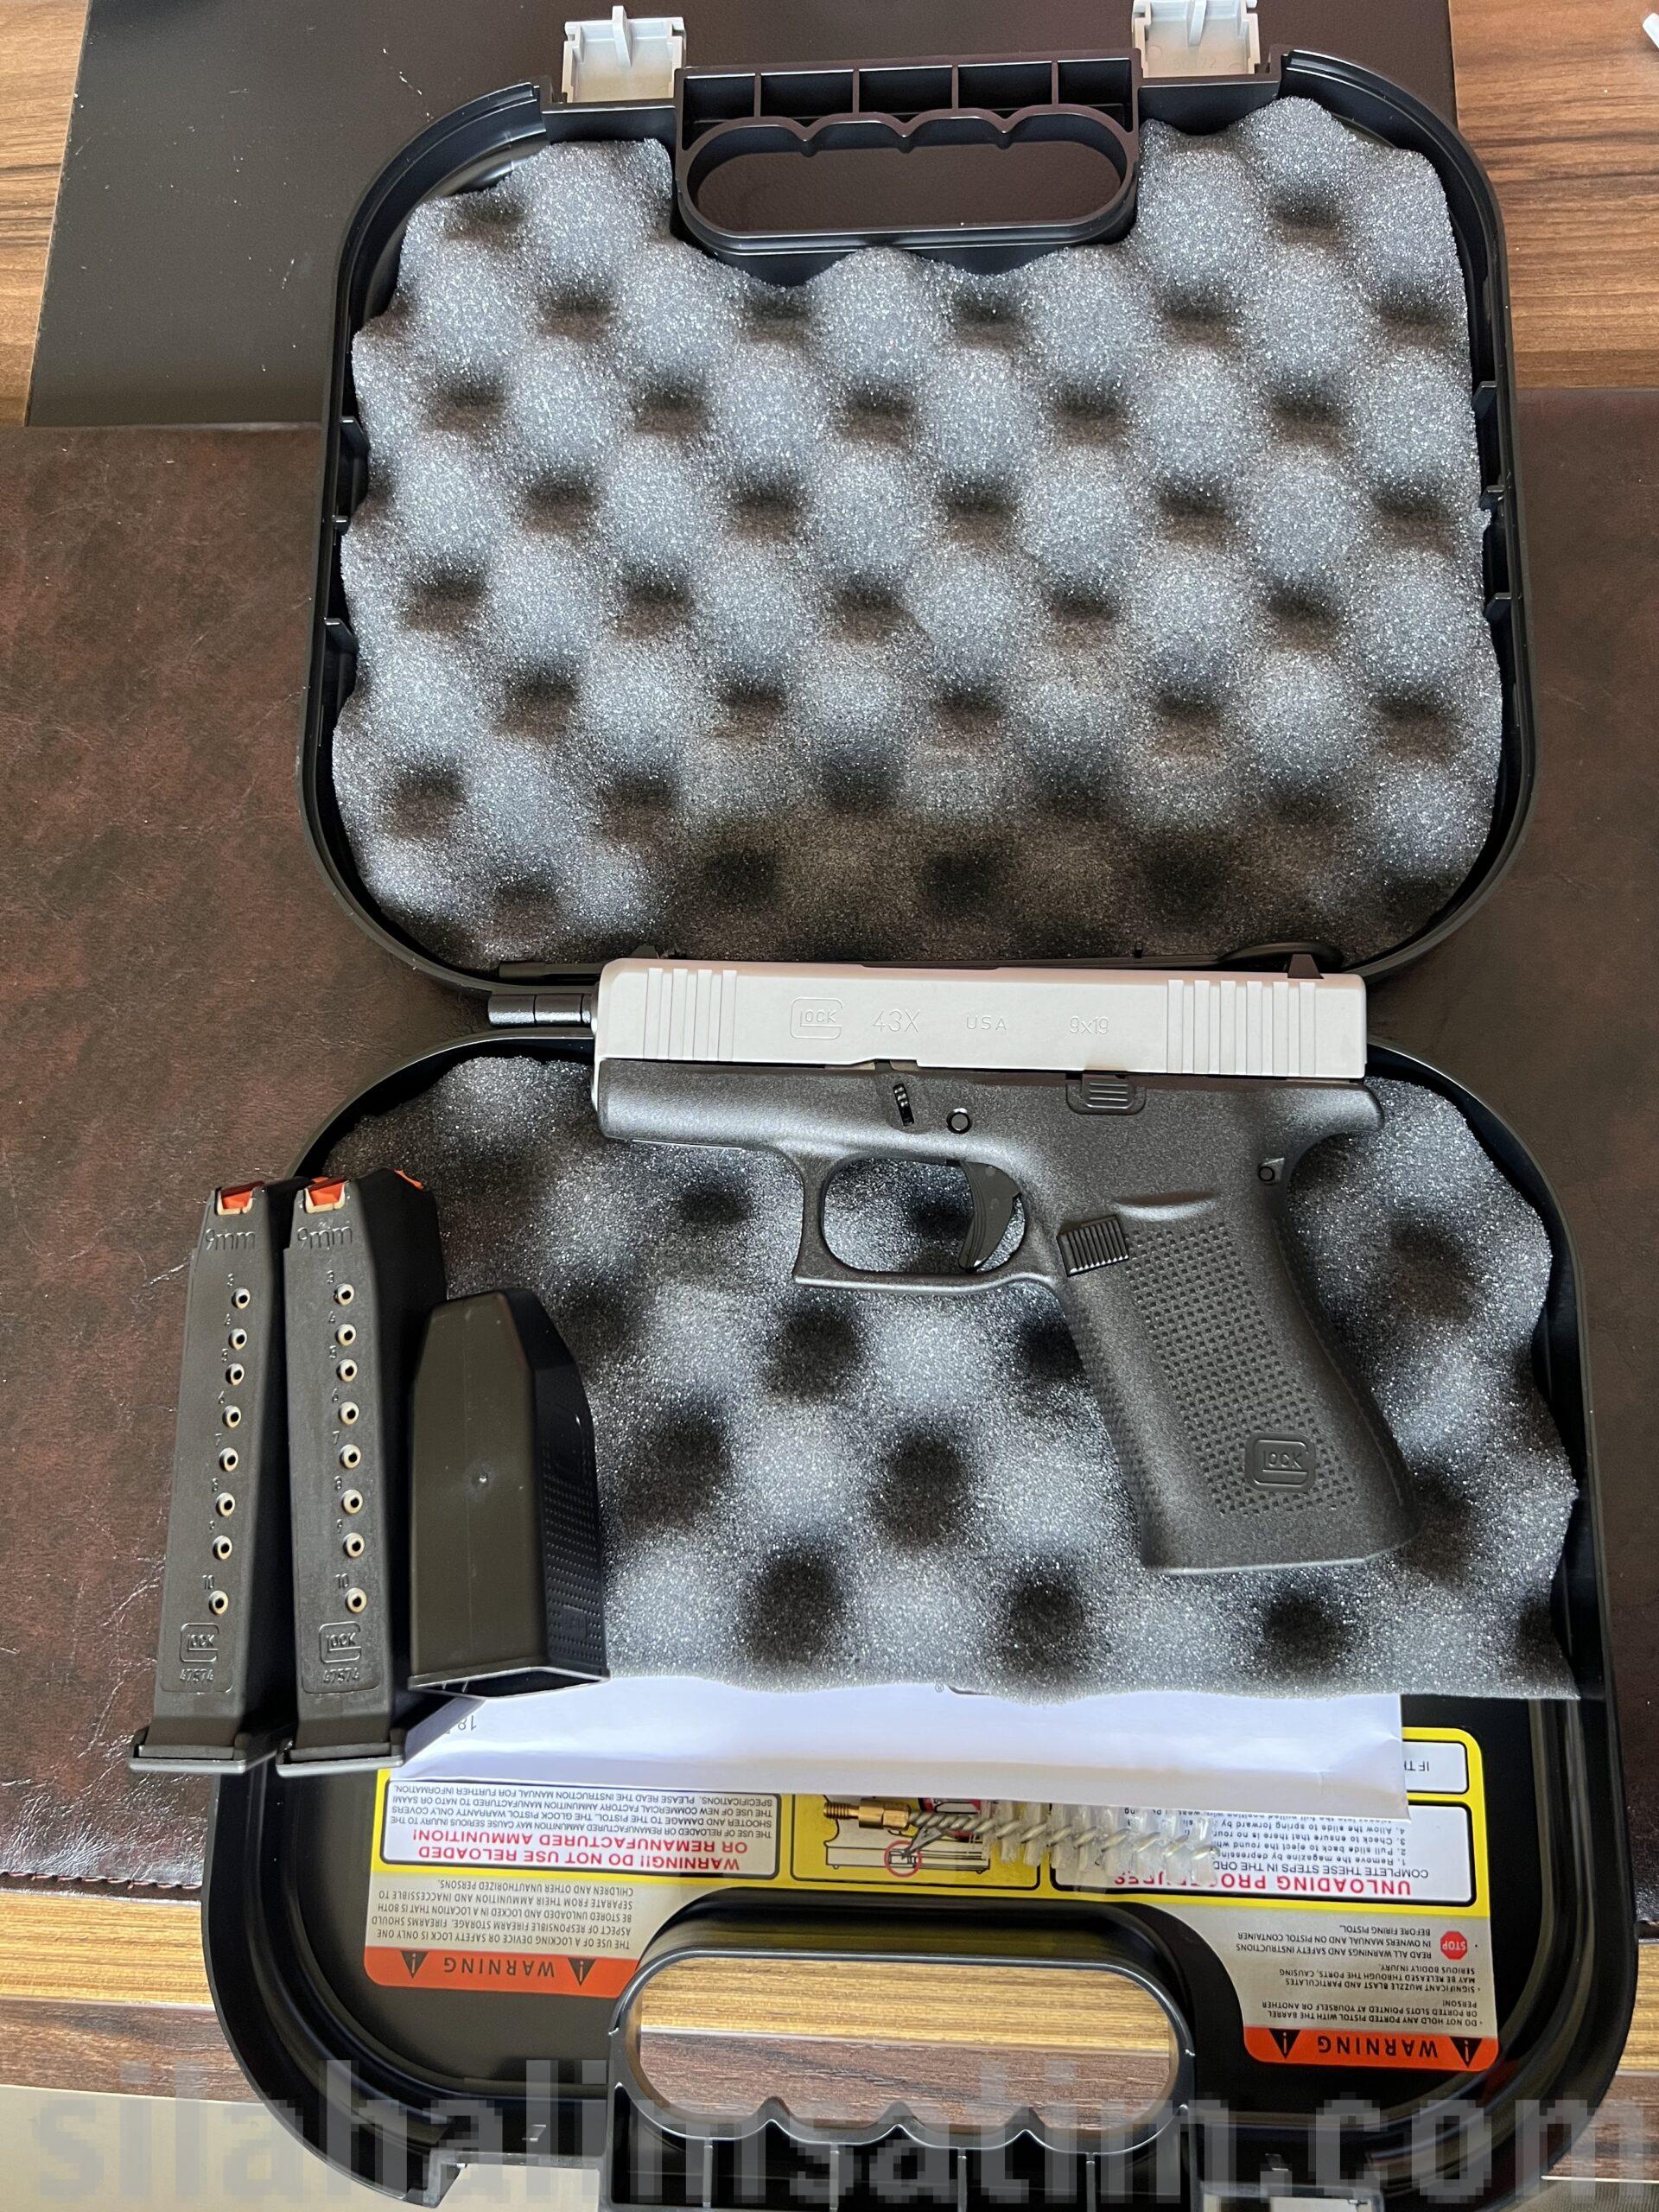 Glock 43 X SİLVER SLİDE